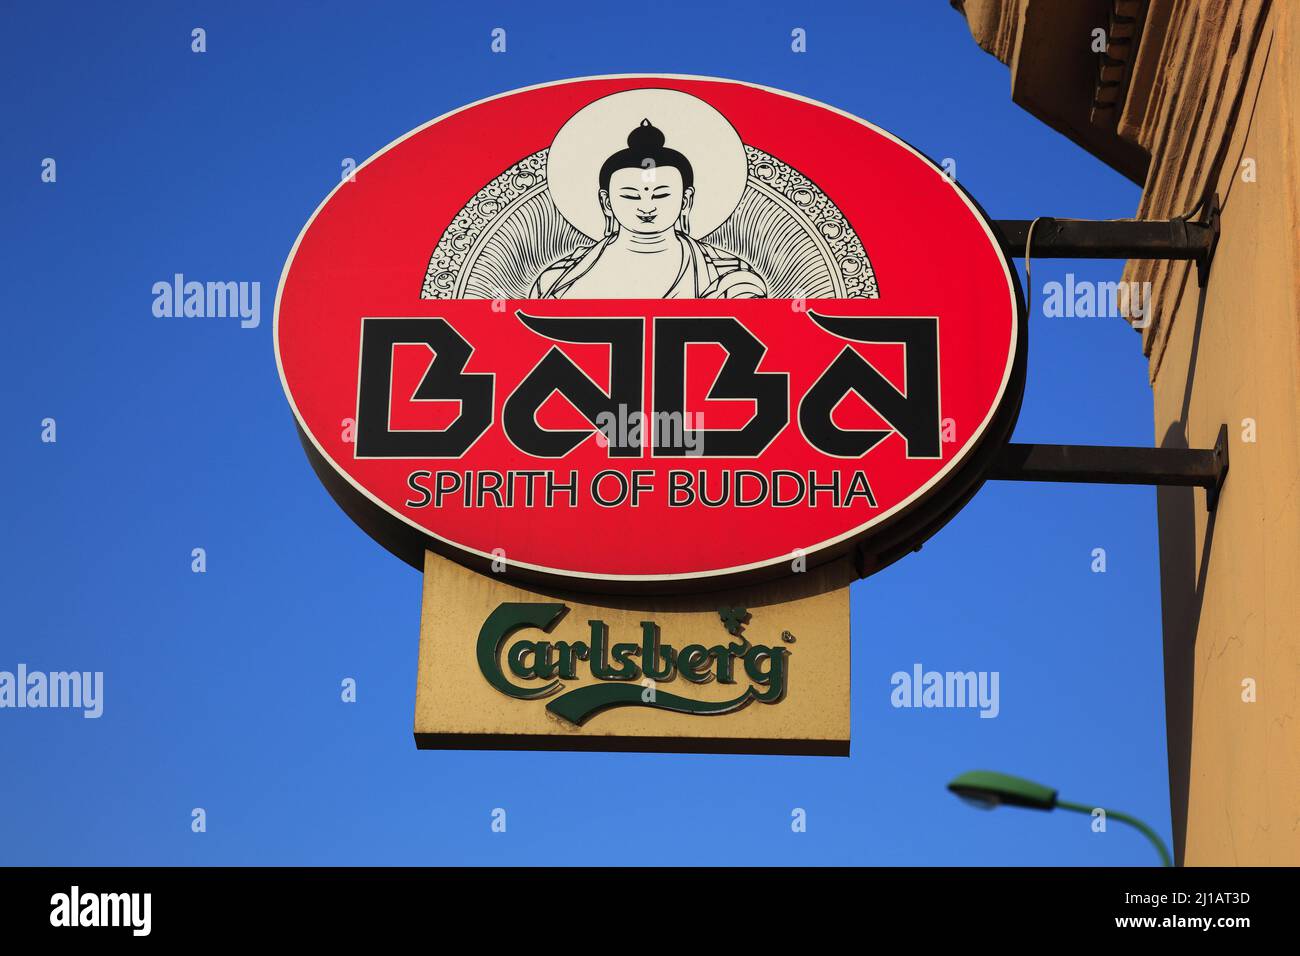 Werbeschild für ein esoterisch buddhistisches Geschäft, Lokal, in Verbindung mit Bierwerbung für Carlsberg, Brasov, Kronstadt, Siebenbürgen, Rumänien Foto Stock